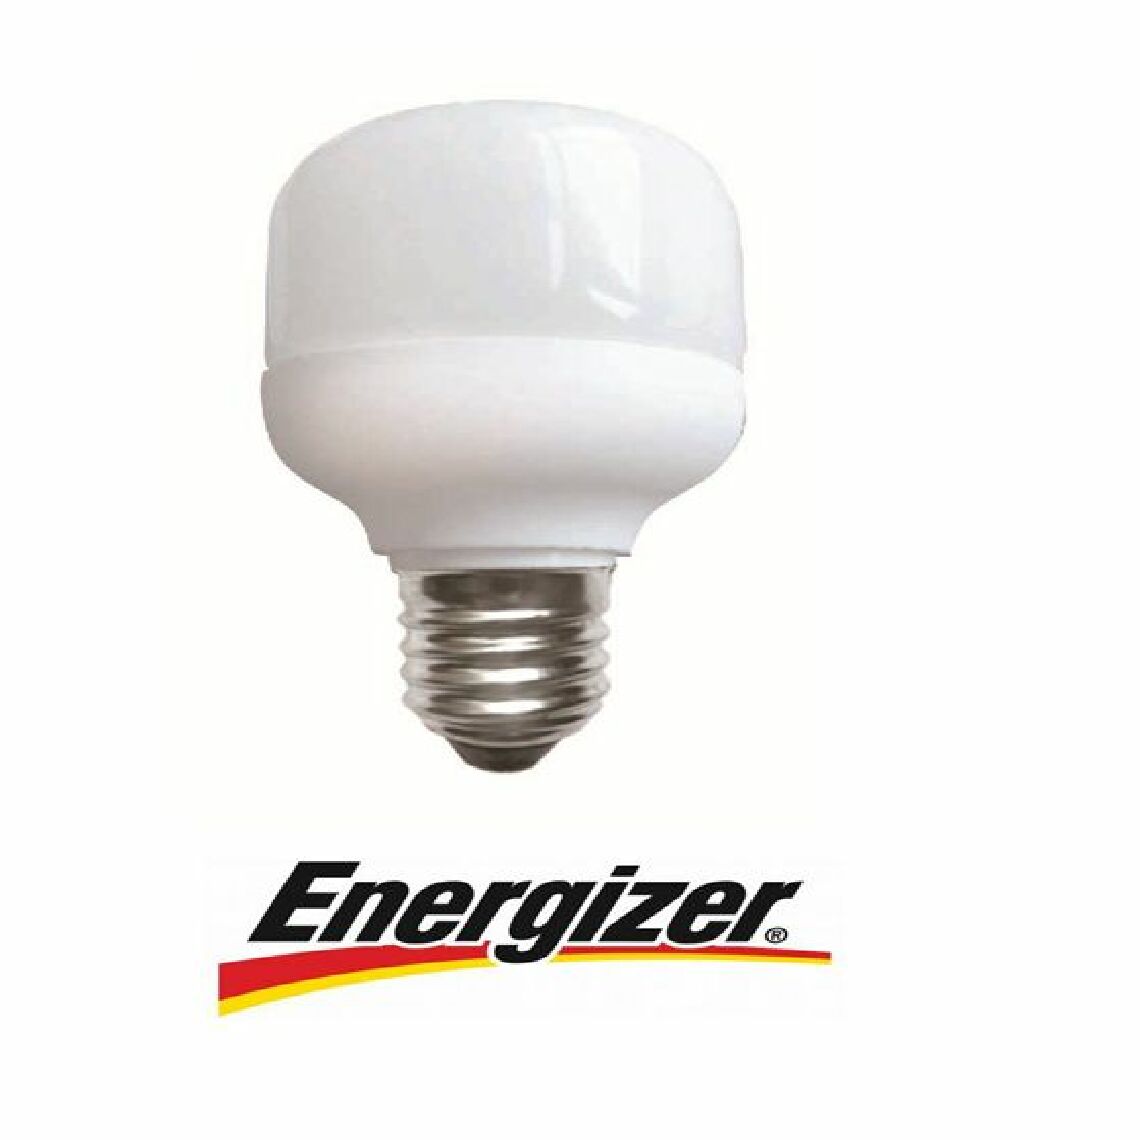 Energizer - Ampoule économie d'énergie Mini-Fluo sphérique 7W culot à vis E27 220-240V - Ampoules LED